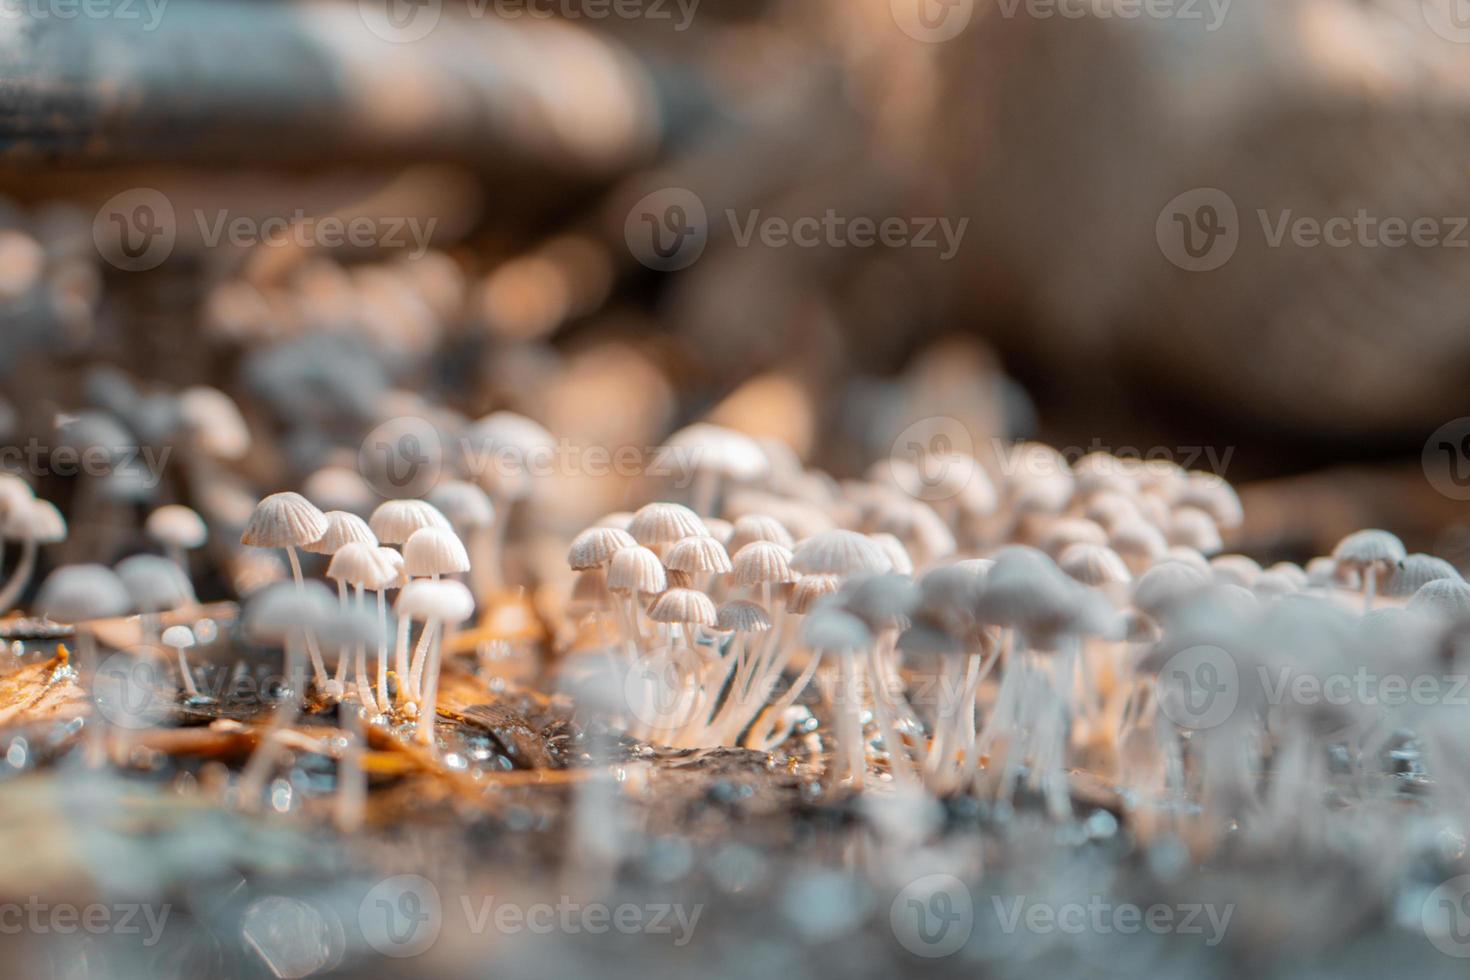 simpatici funghi psilocybe con tappo liberty foto